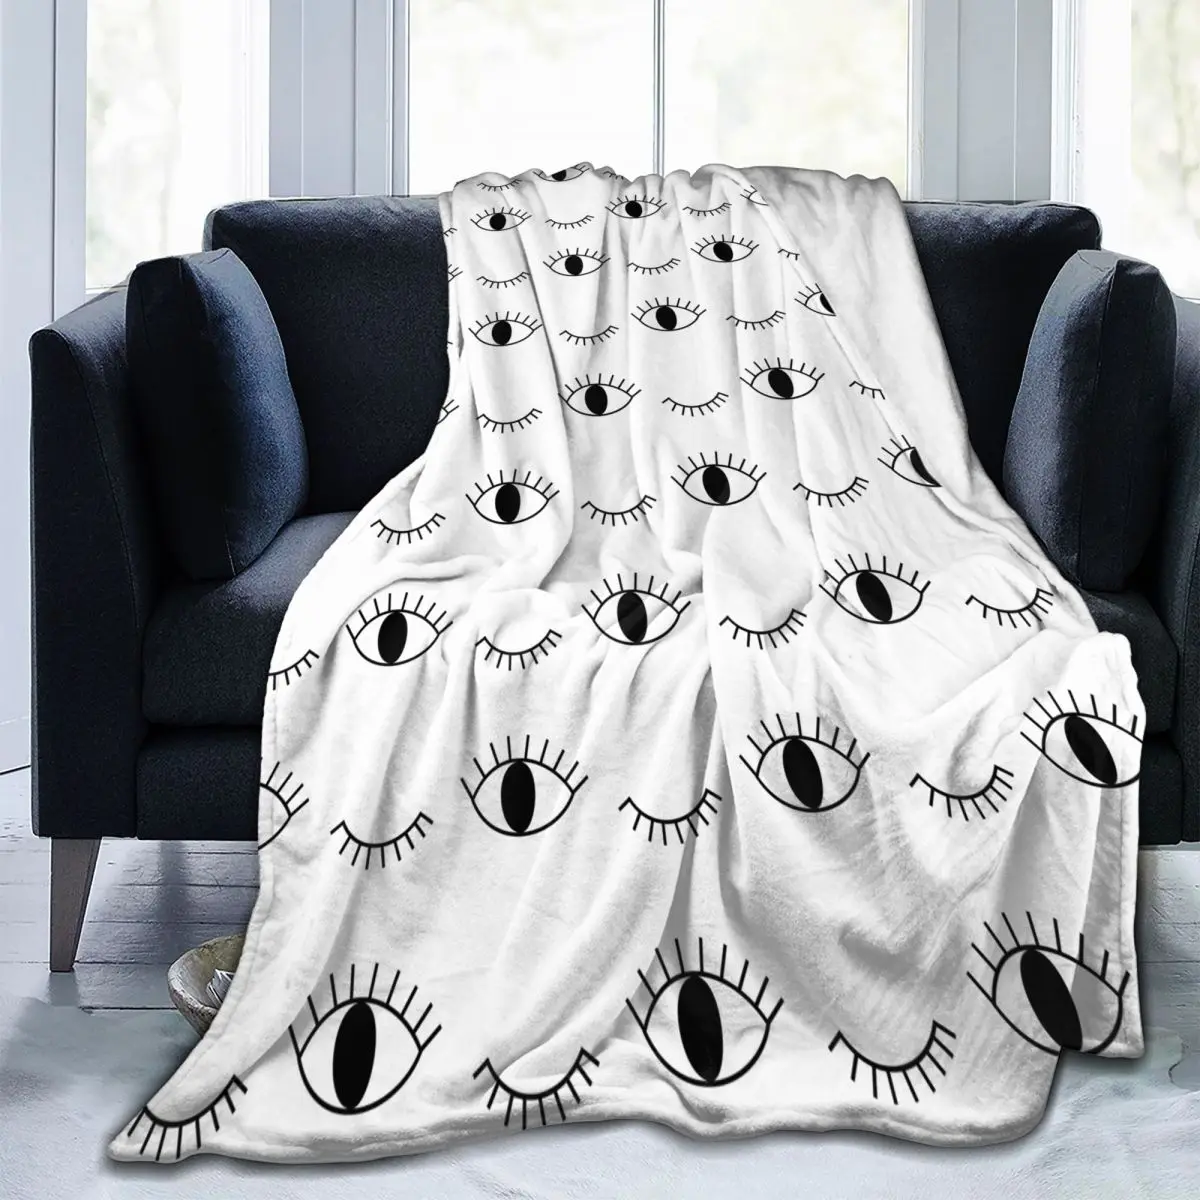 

Одеяло флисовое с мультяшным принтом, многофункциональное легкое покрывало с закрытыми ресницами для постельного белья